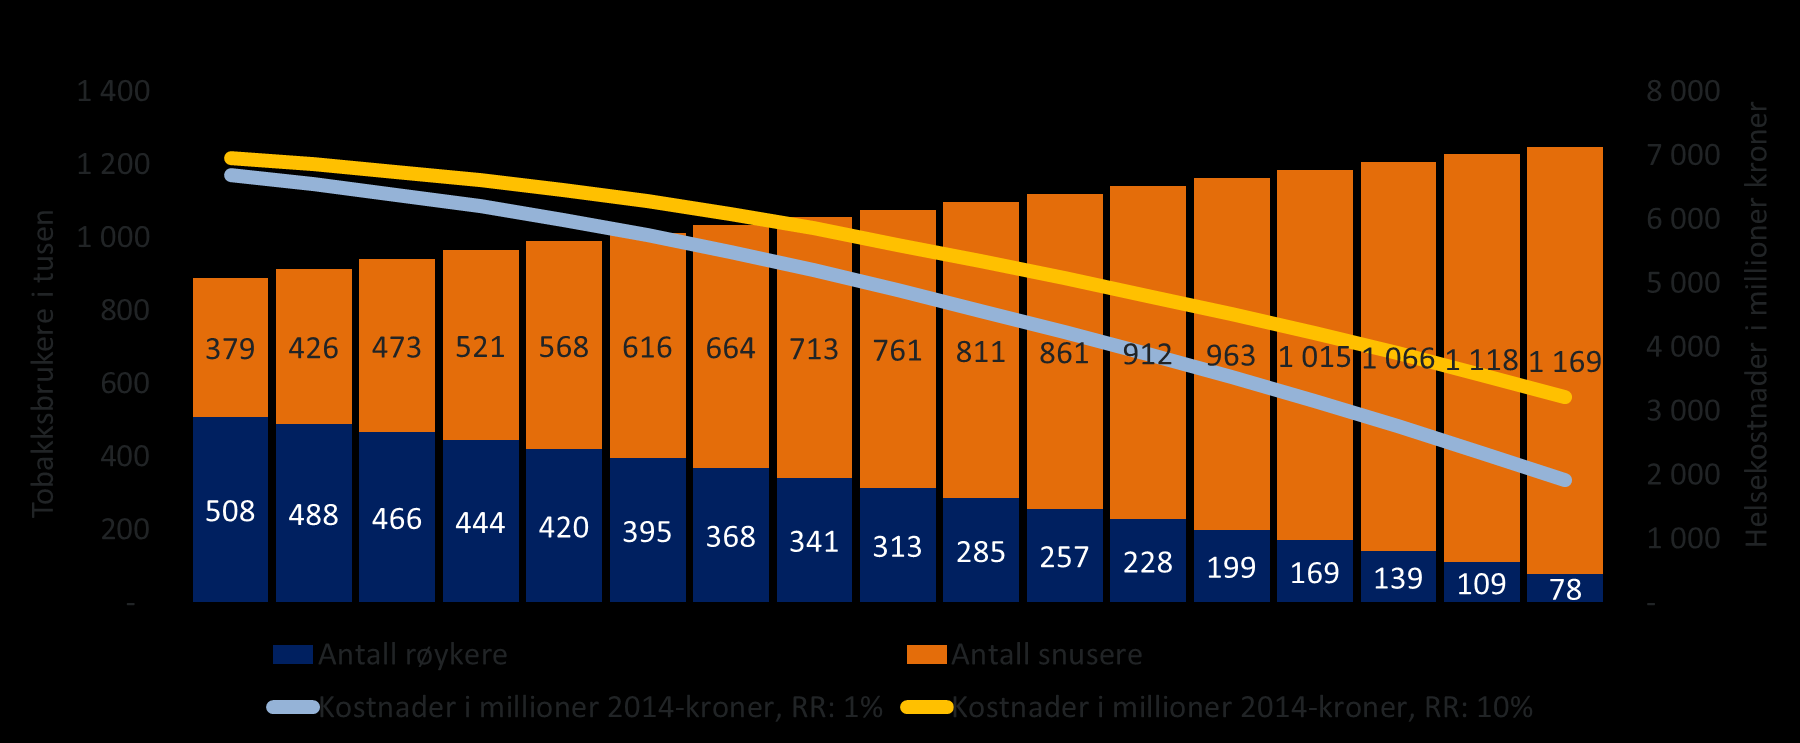 Figur 7: Antall tobakkbrukere i tusener og sparte helsekostnader per år fra 2014 til 2030.